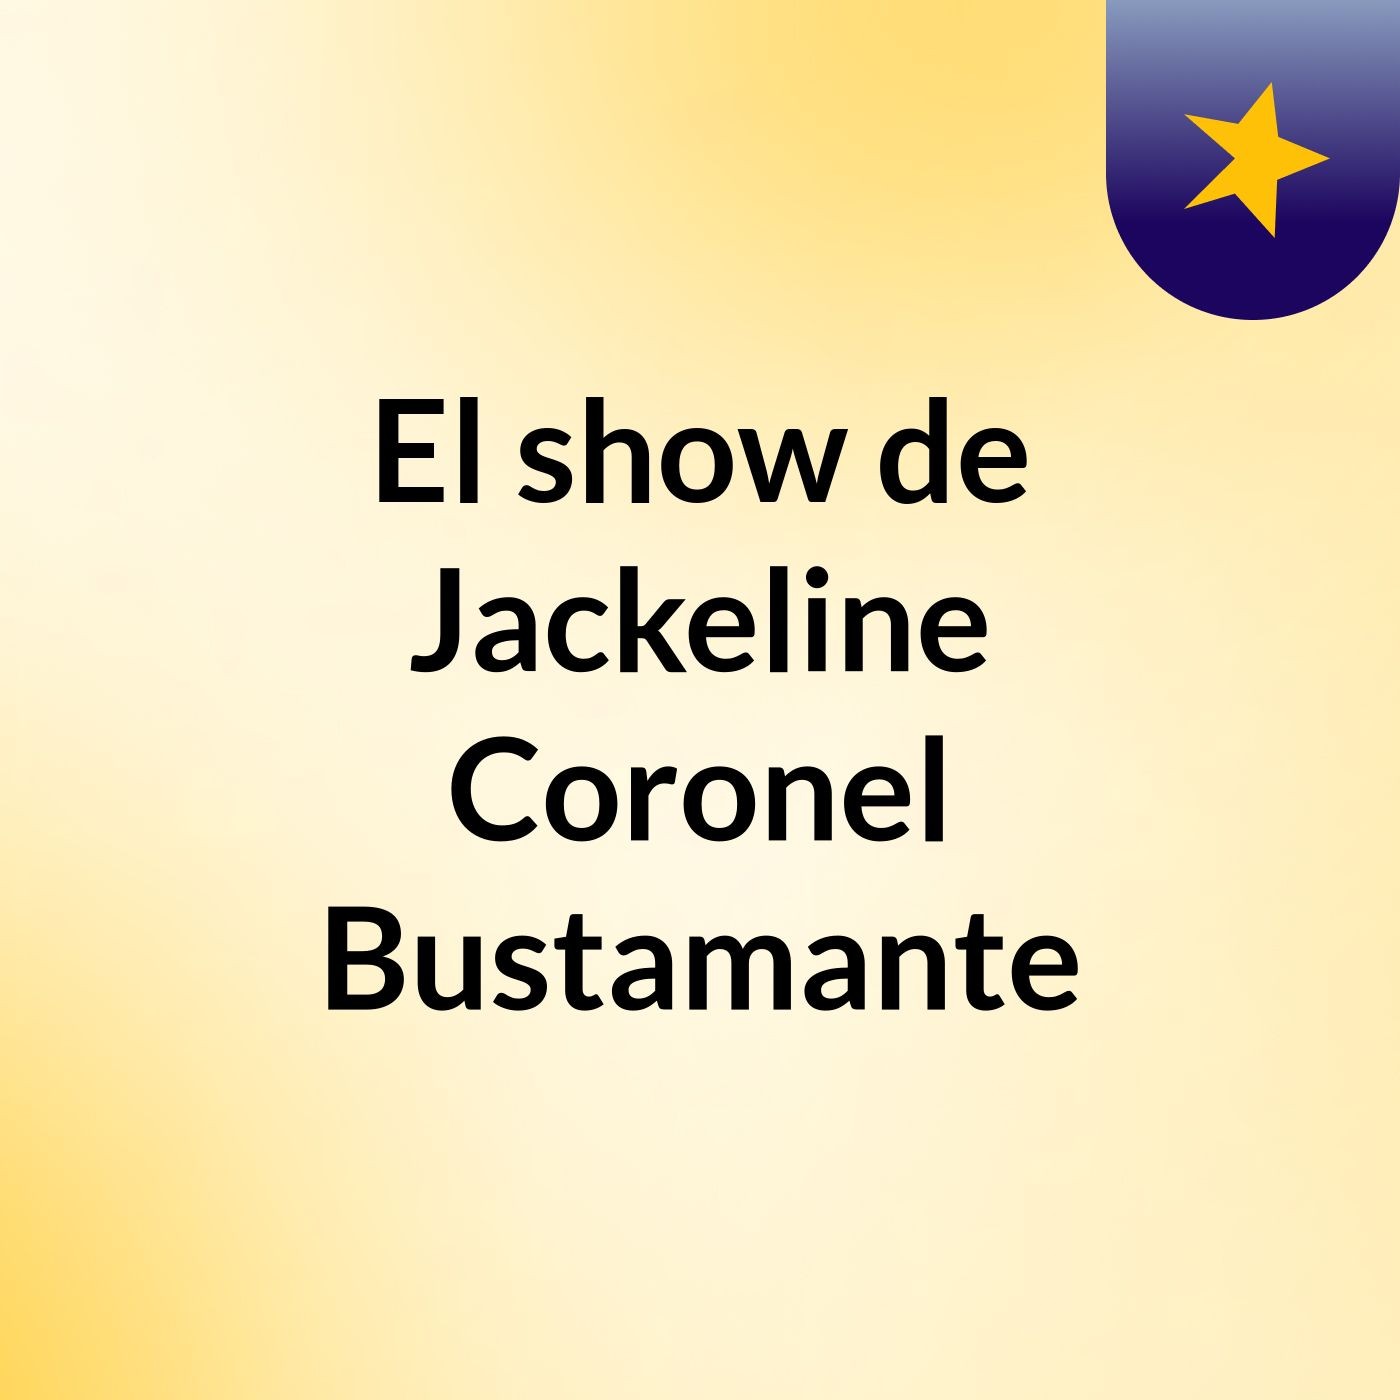 El show de Jackeline Coronel Bustamante